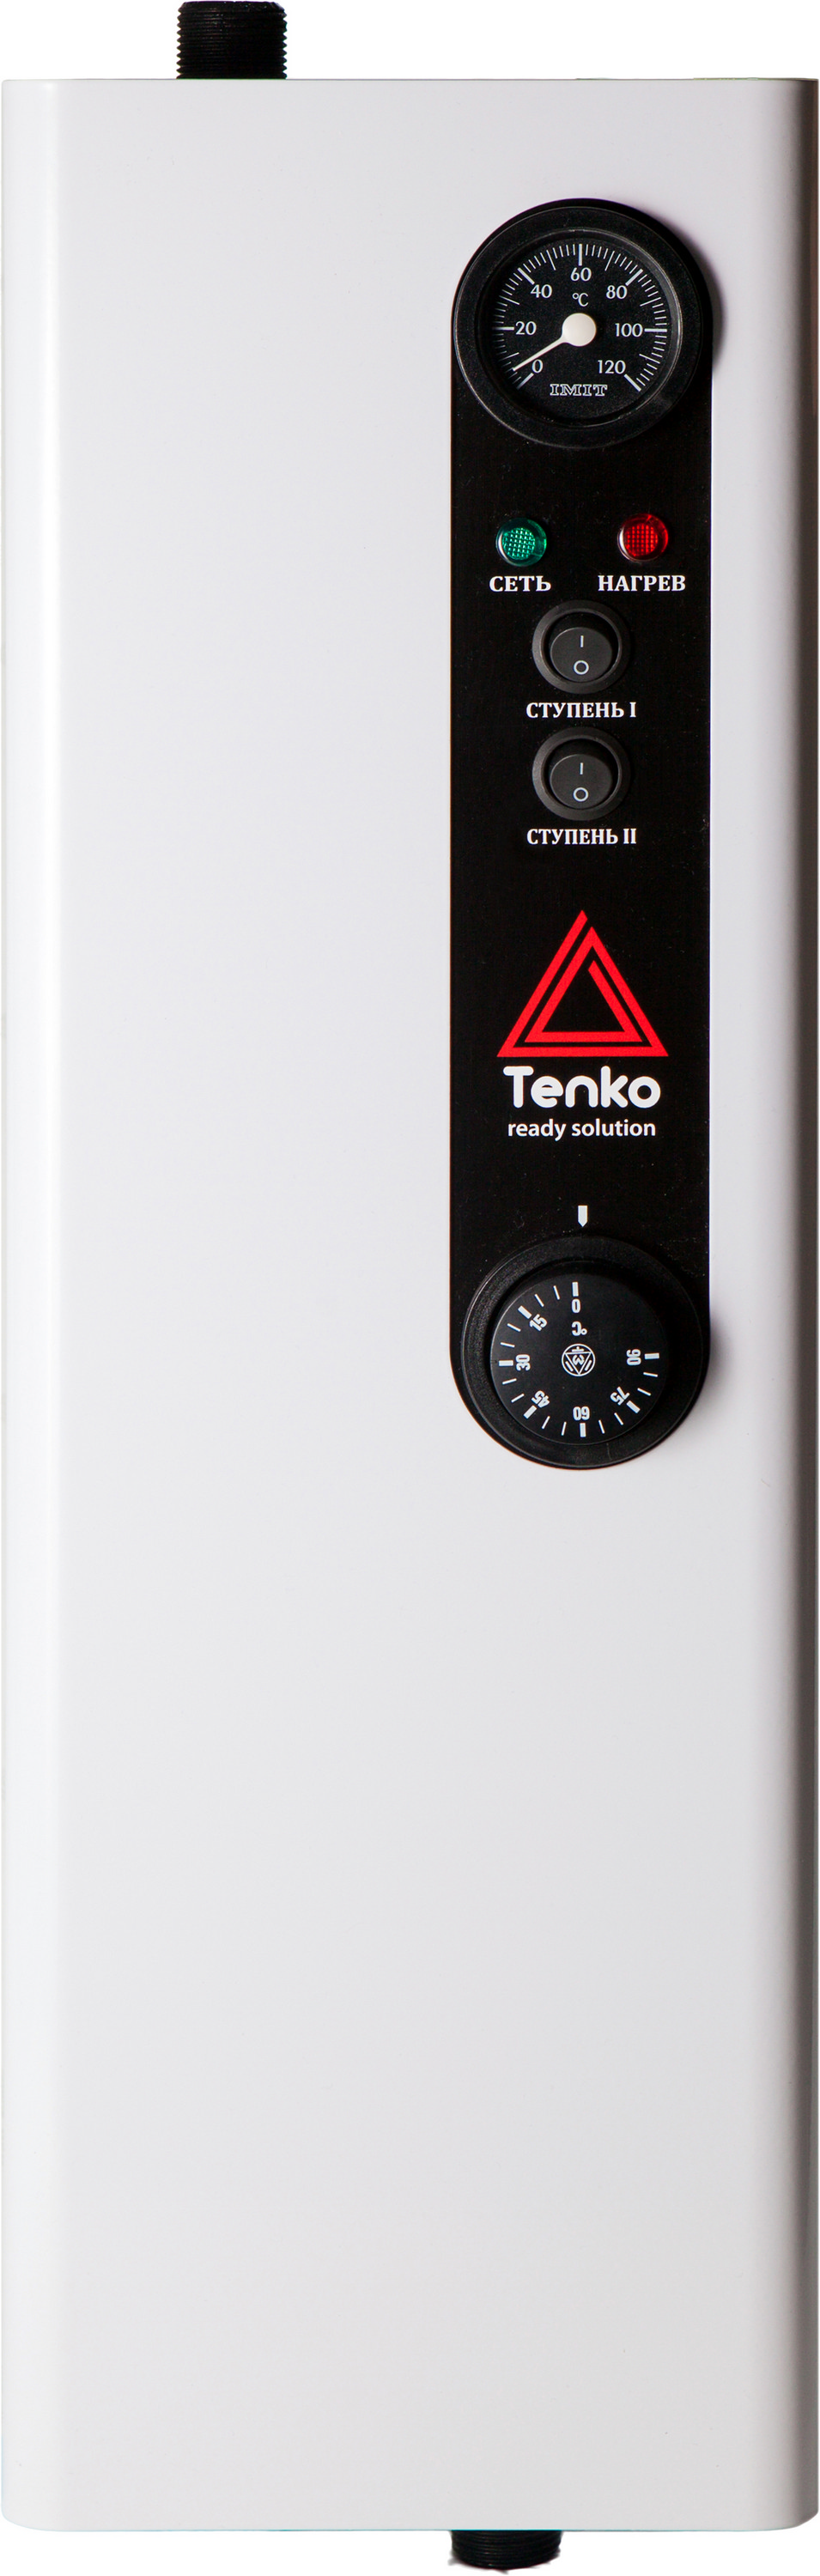 Отзывы электрокотел tenko настенный Tenko Эконом 6 220 в Украине